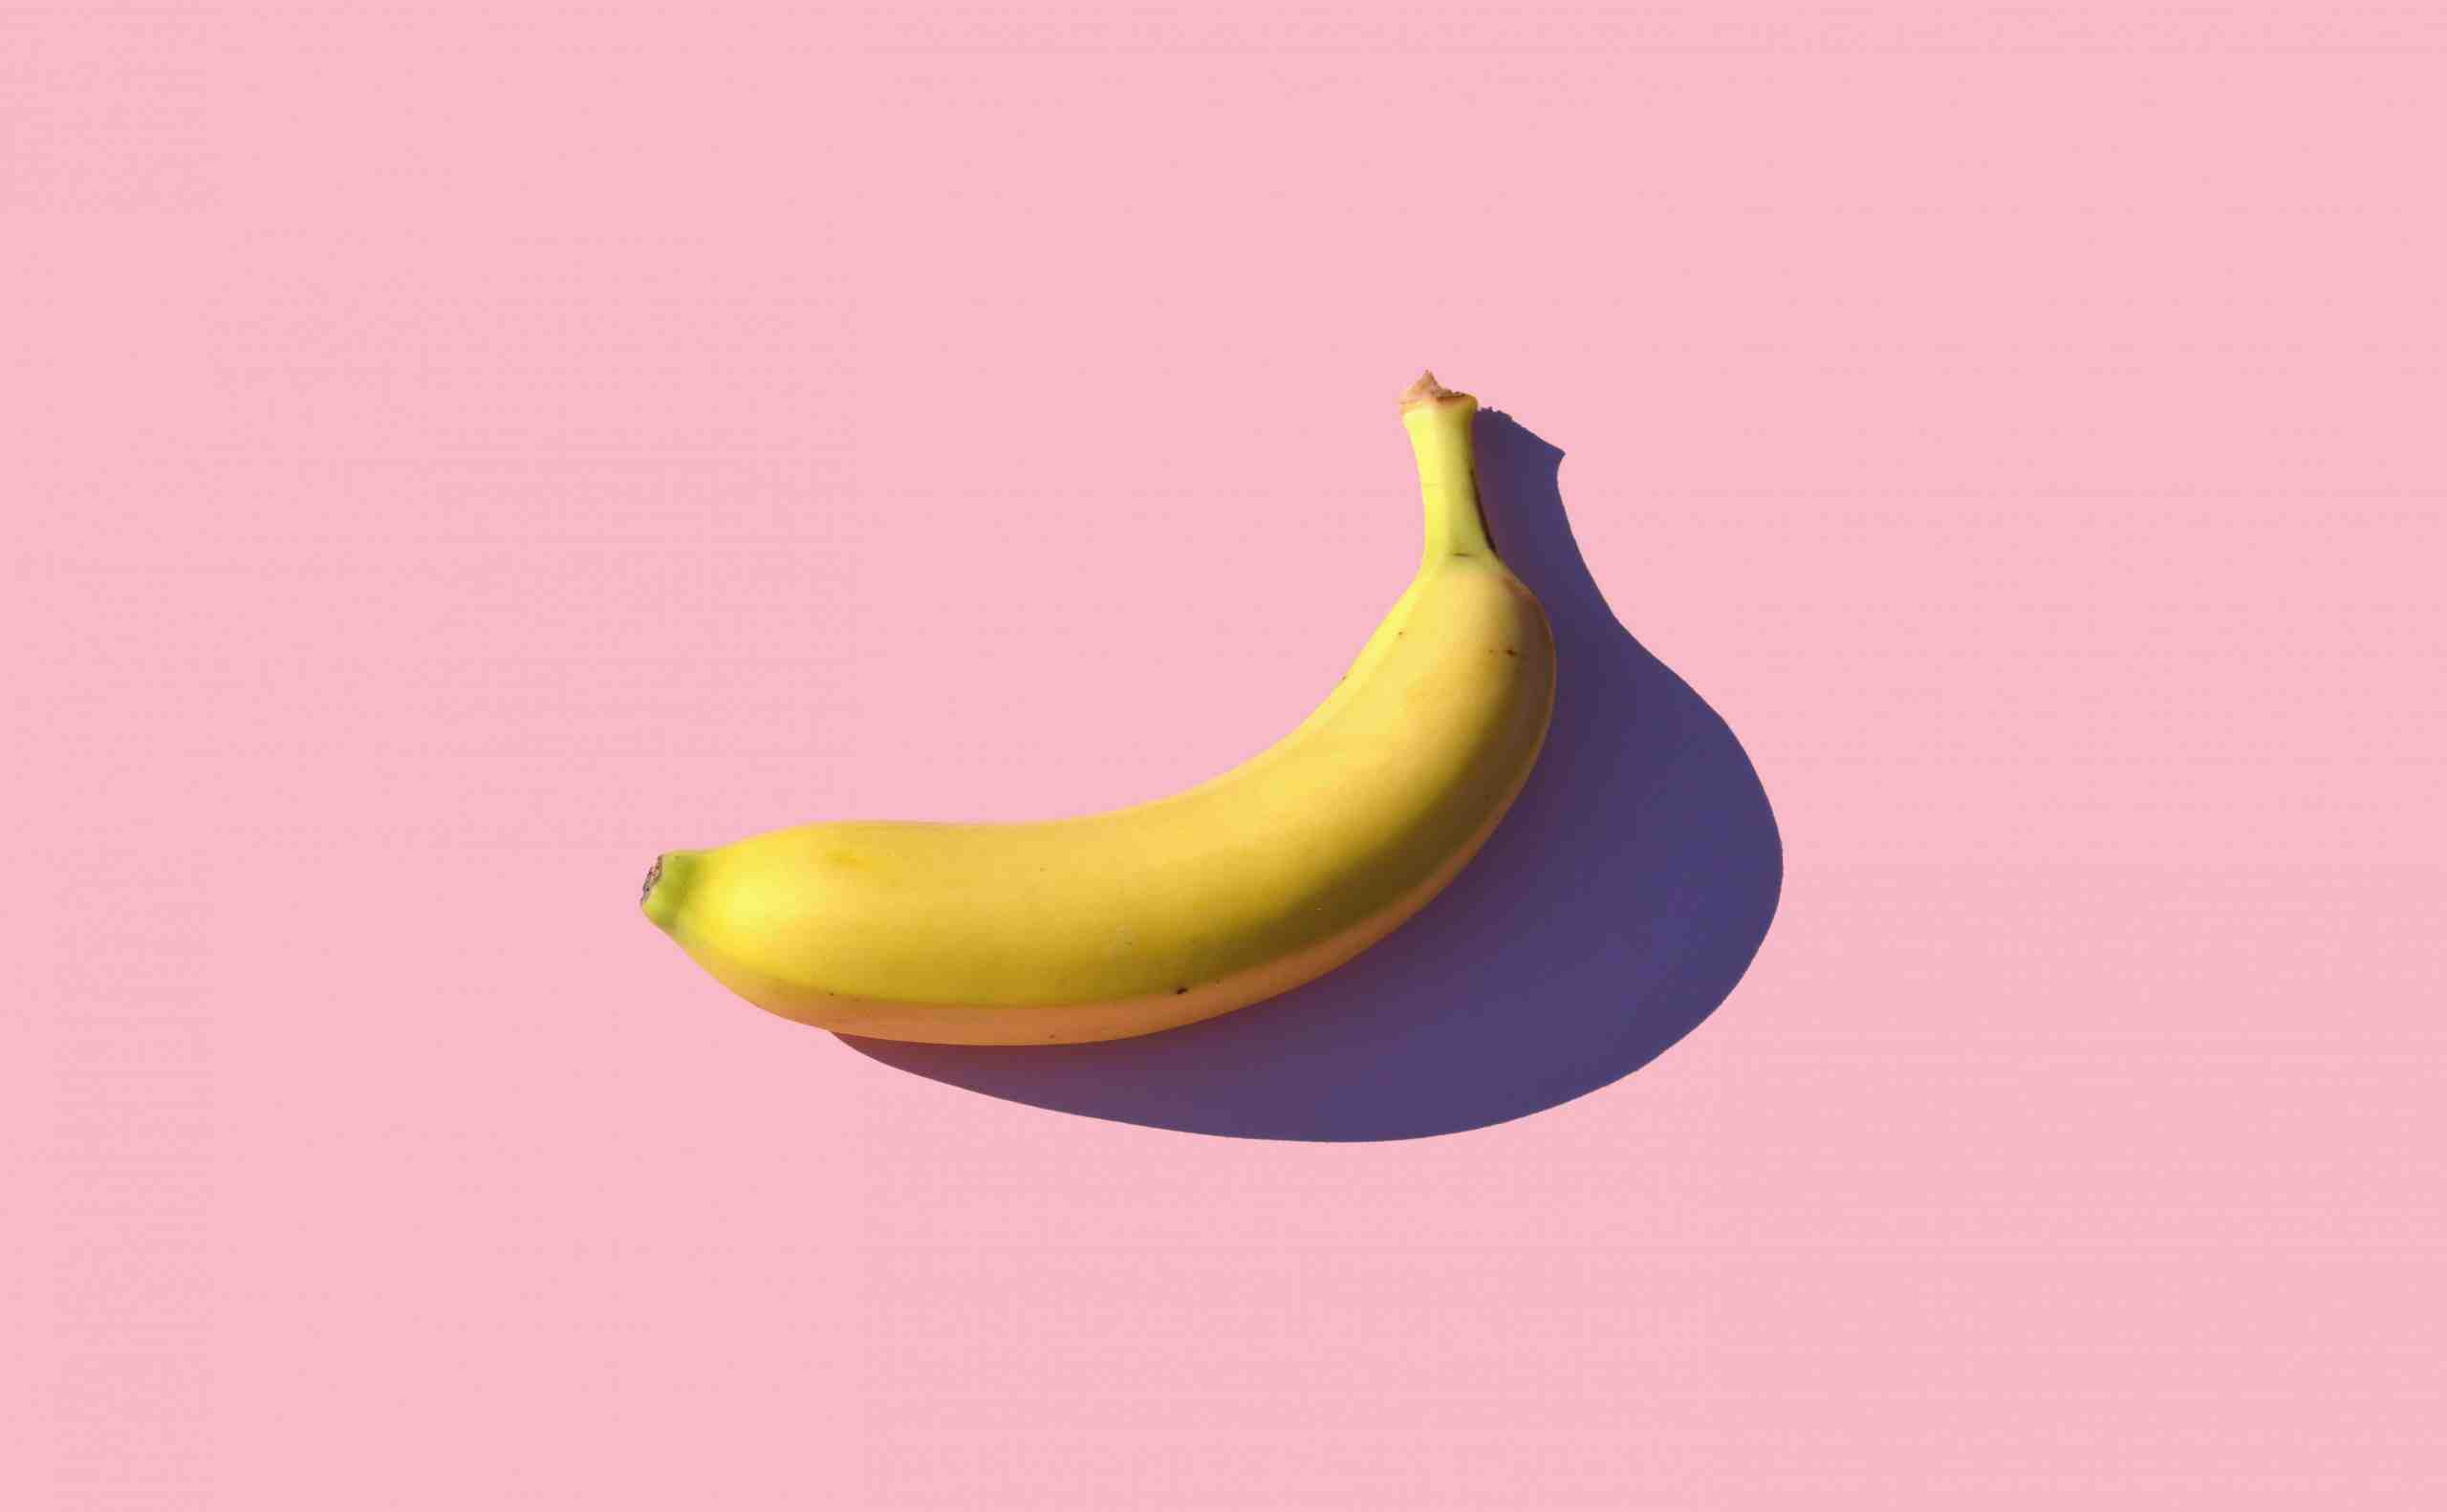 Pourquoi ne puis-je pas digérer la banane?